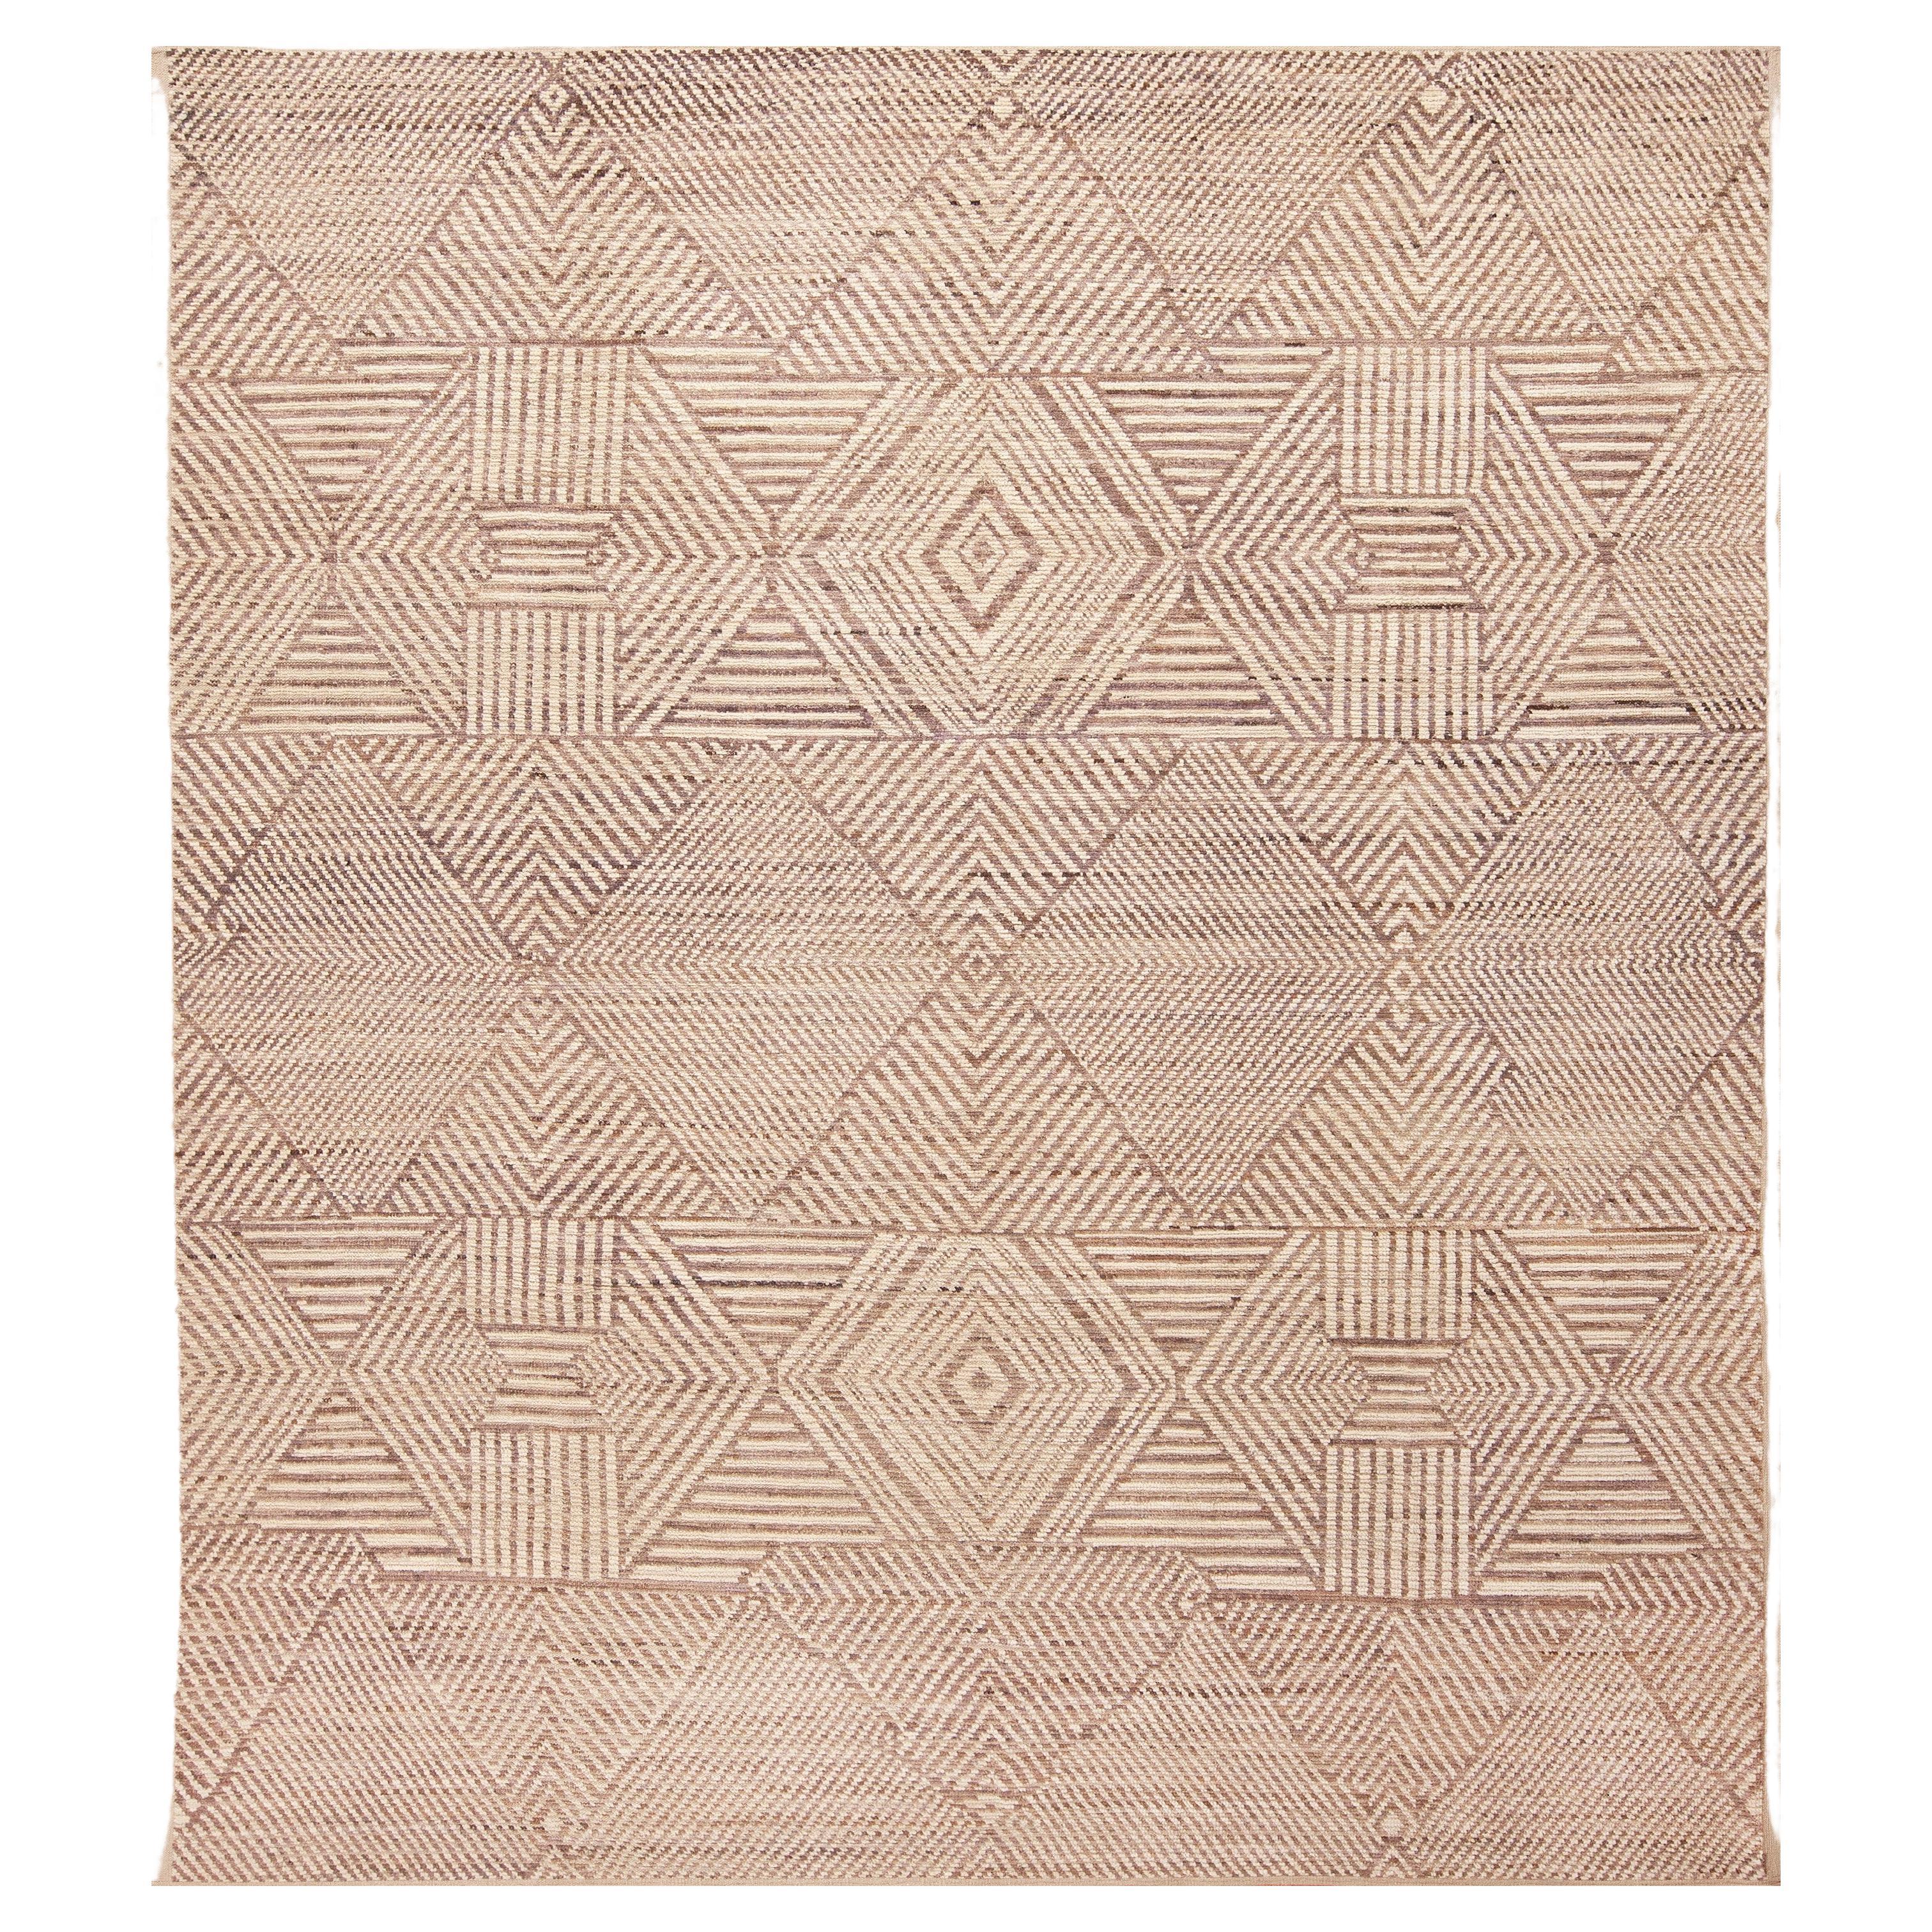 Nazmiyal Kollektion Nordafrikanisch inspirierter moderner geometrischer Neutralteppich 9' x 10'